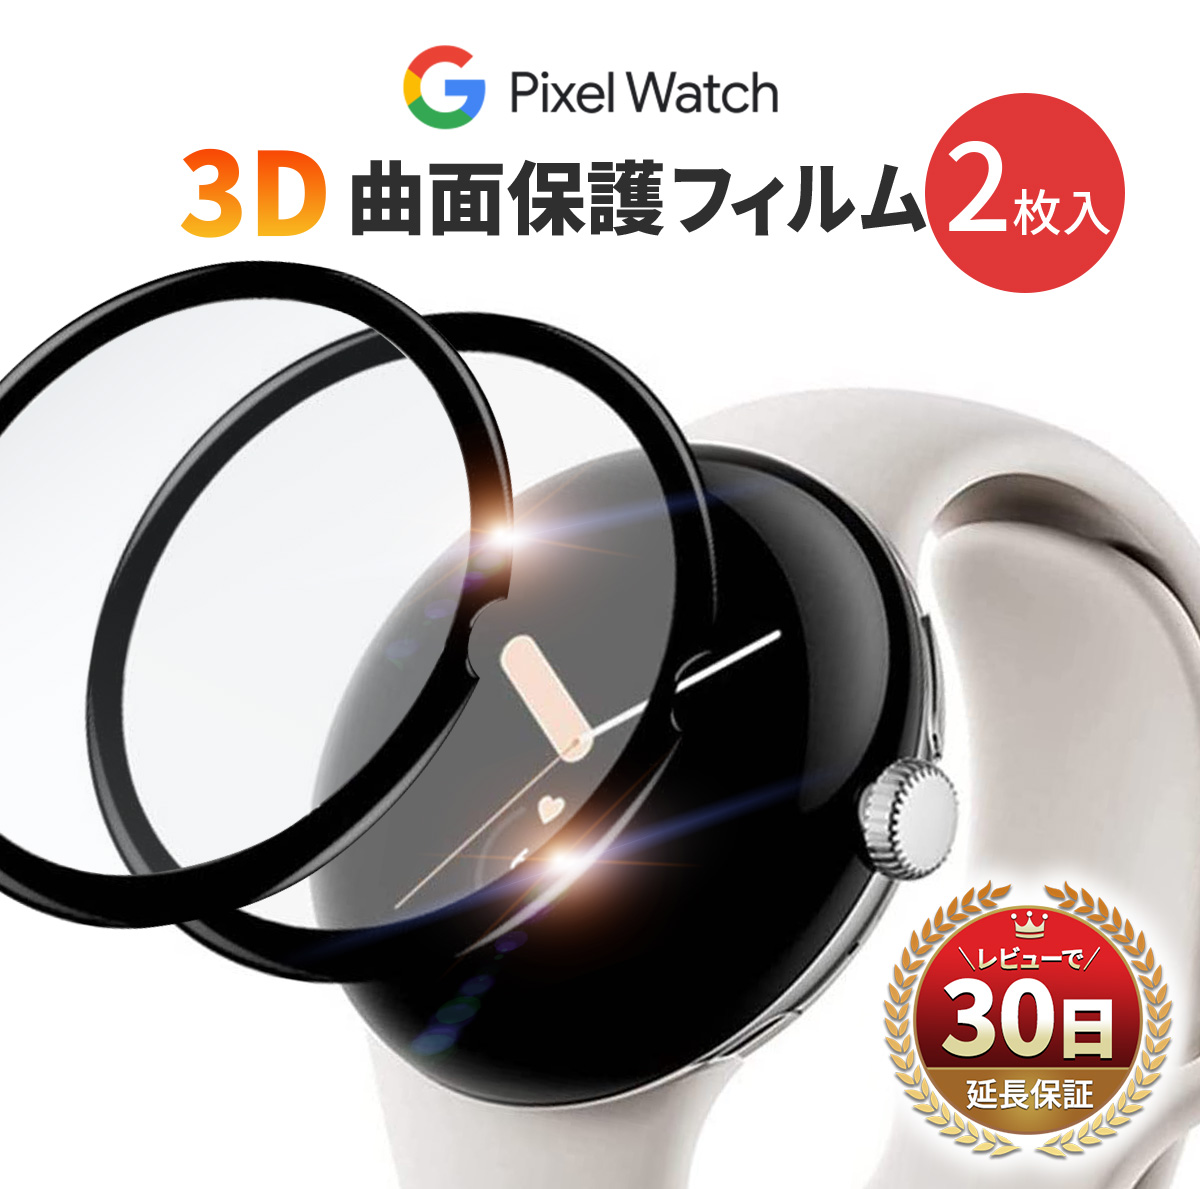 Google Pixel Watch フィルム 2枚入 カバー 曲面 保護フィルム 3D グーグル ピクセル ウォッチ PMMA 液晶 耐衝撃 傷防止 気泡 防止 スムーズ タッチ スマートウォッチ クリア 黒